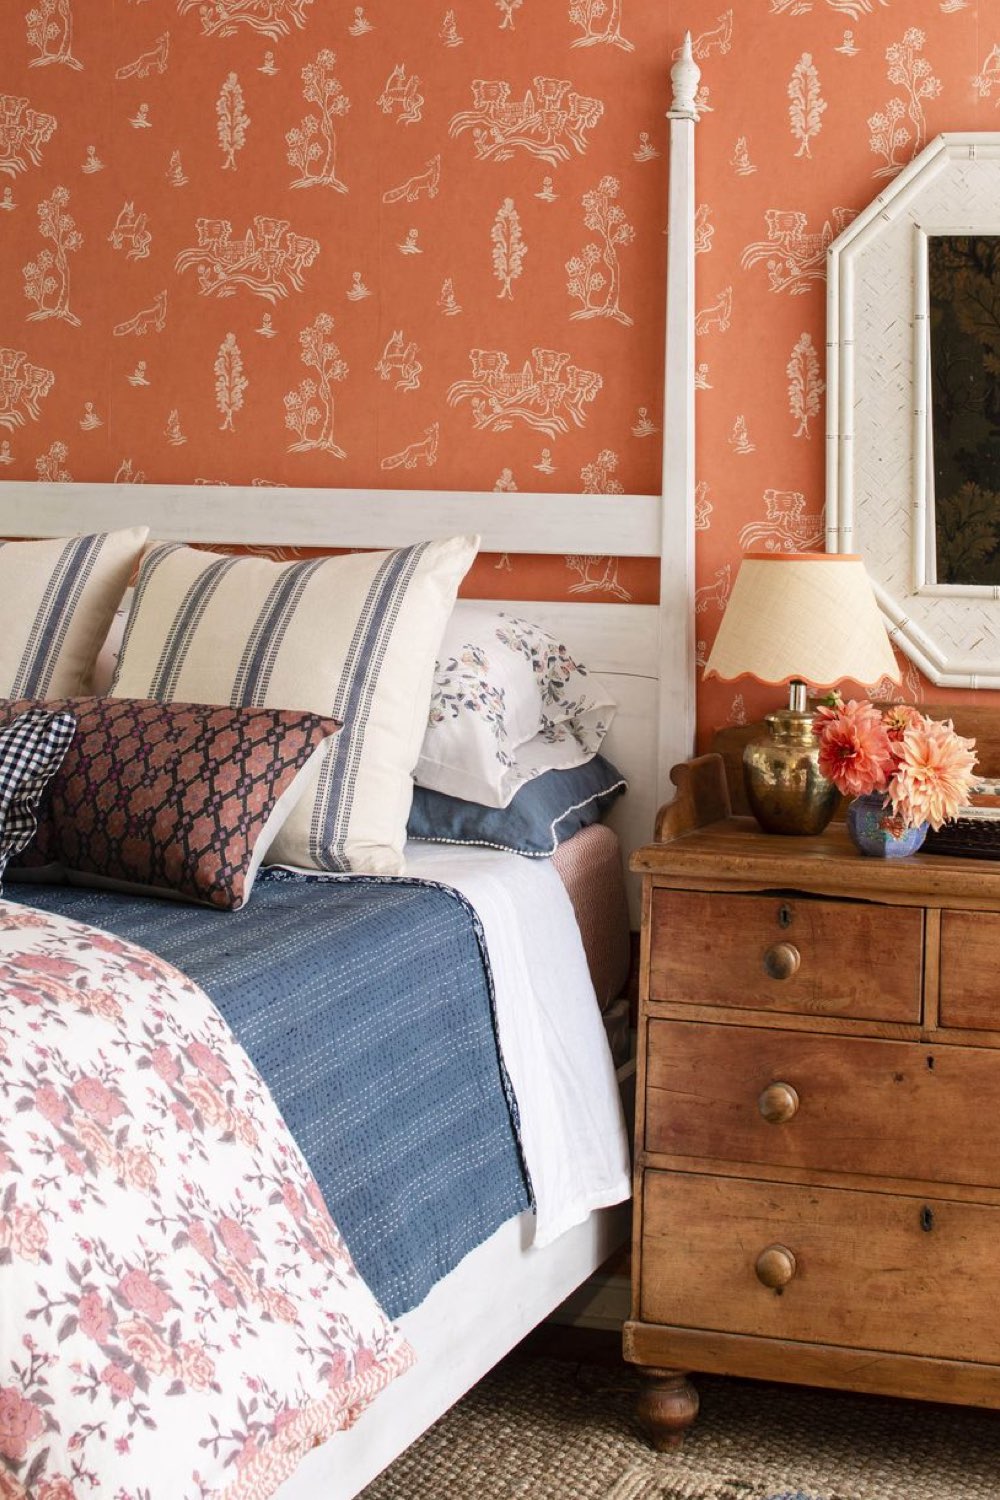 visite deco cottage charmant montagne chambre à coucher 2 personnes papier peint désuet cousleur orange terracotta motif fleur beige lit blanc table de chevet en bois